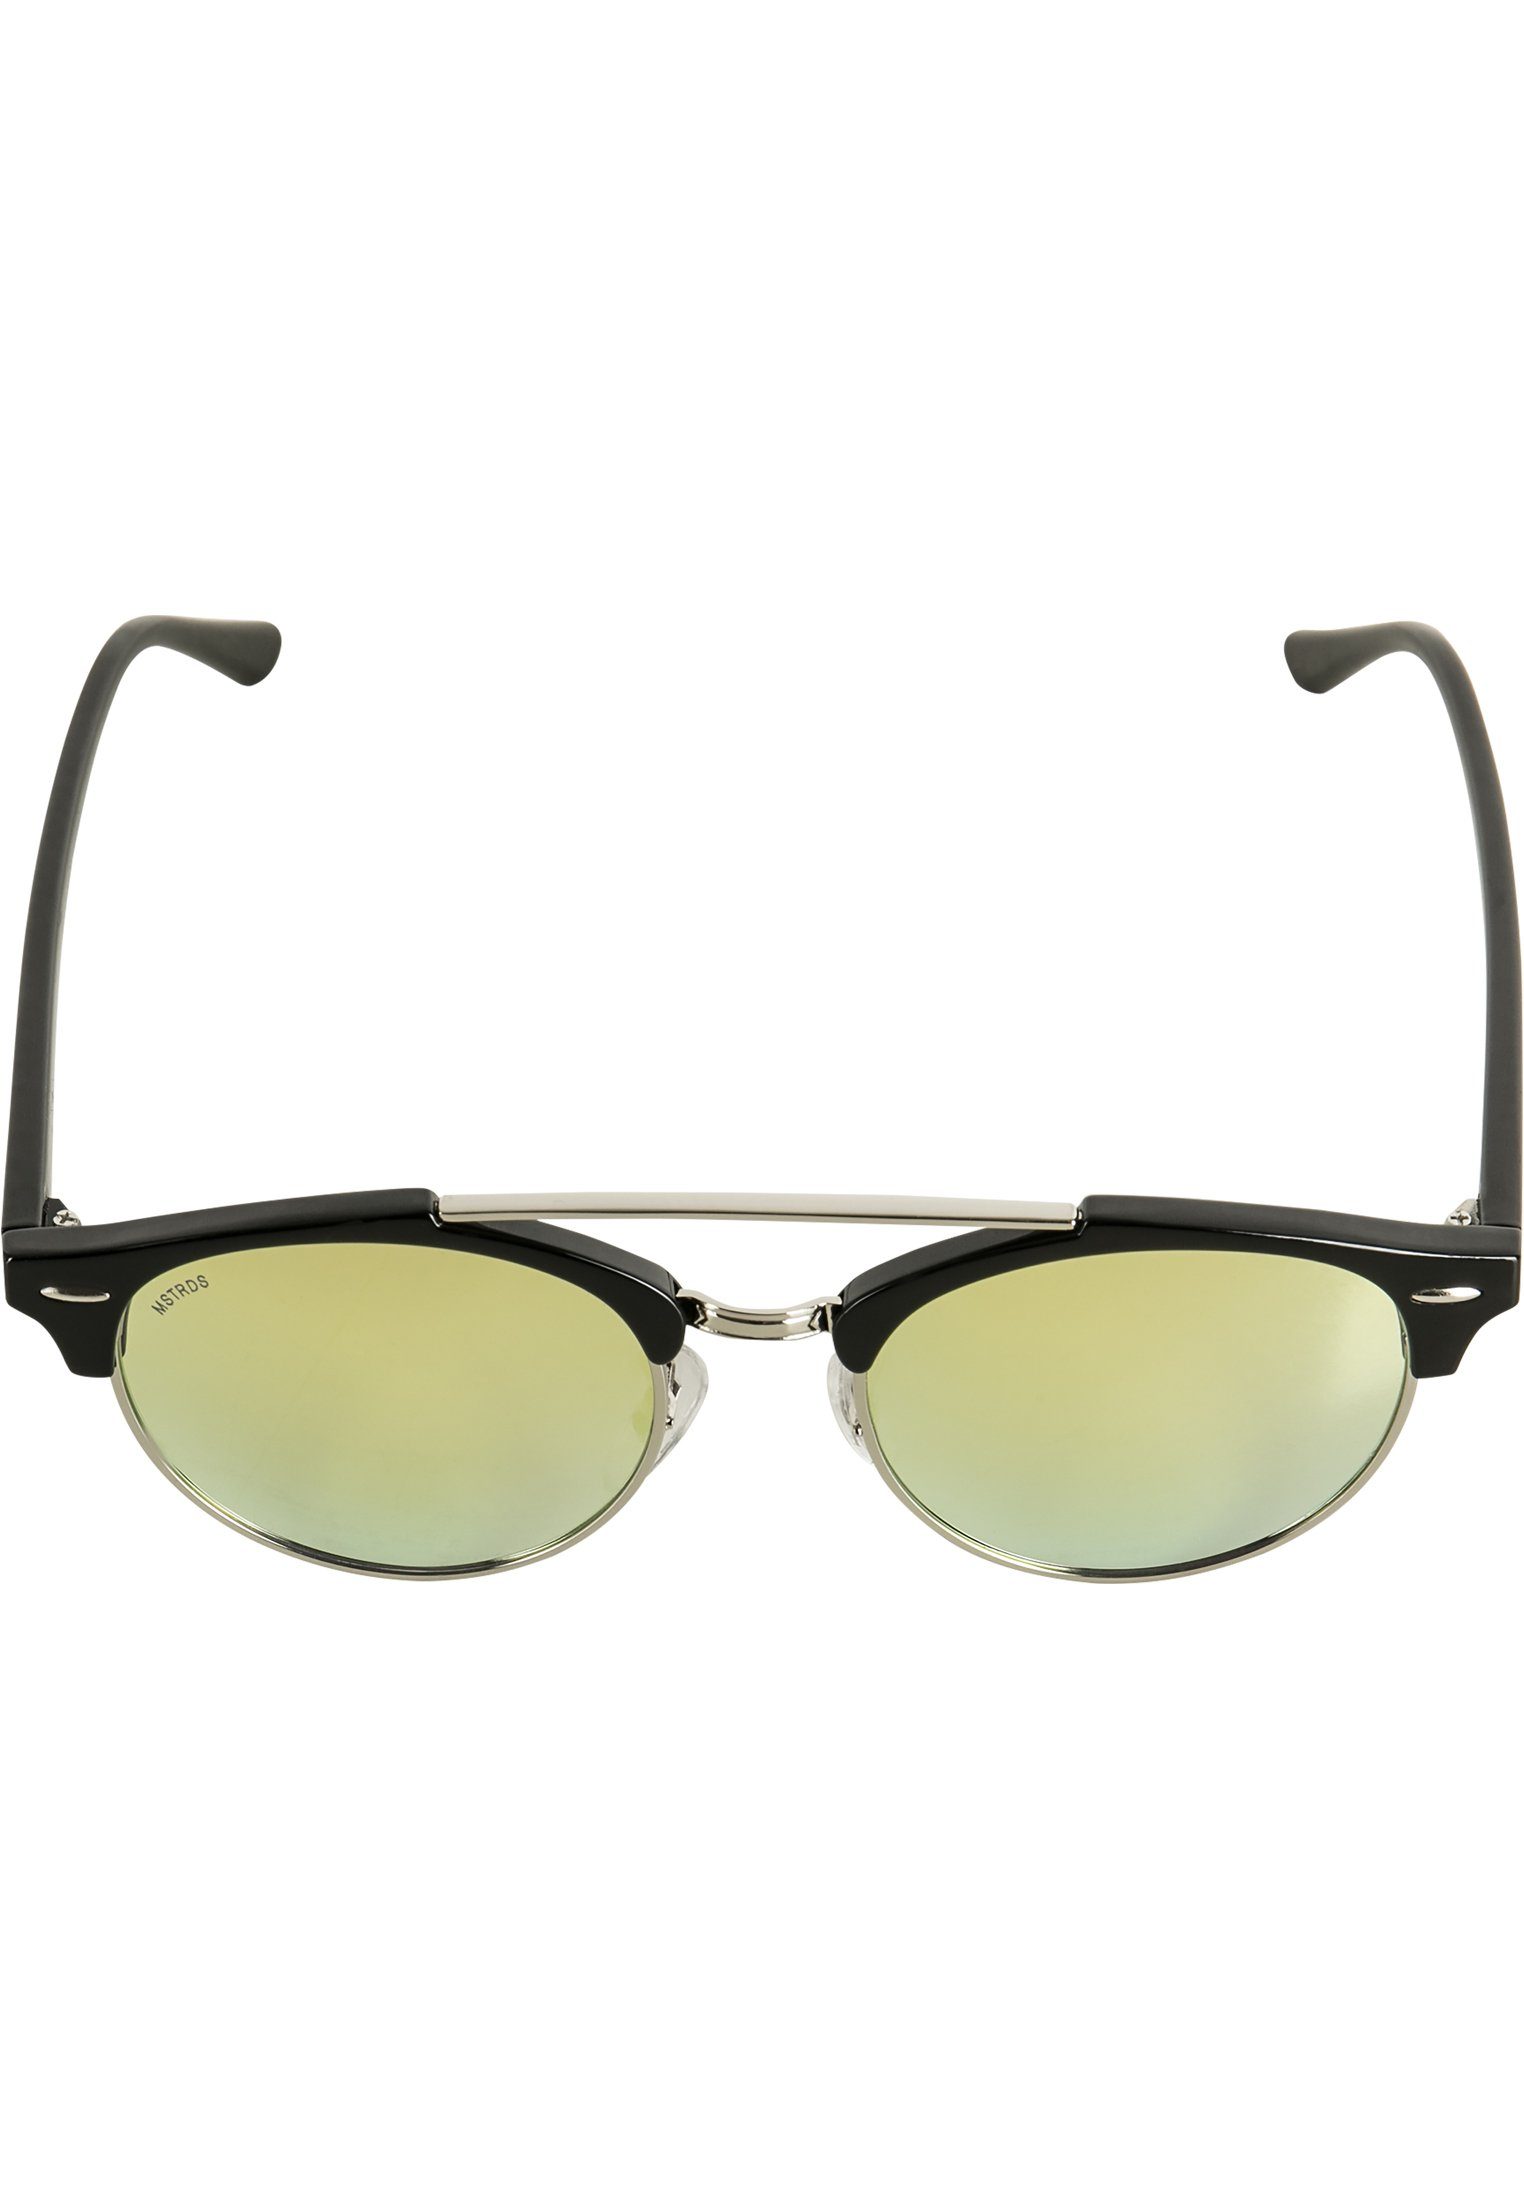 Sonnenbrille Accessoires MSTRDS April Sunglasses